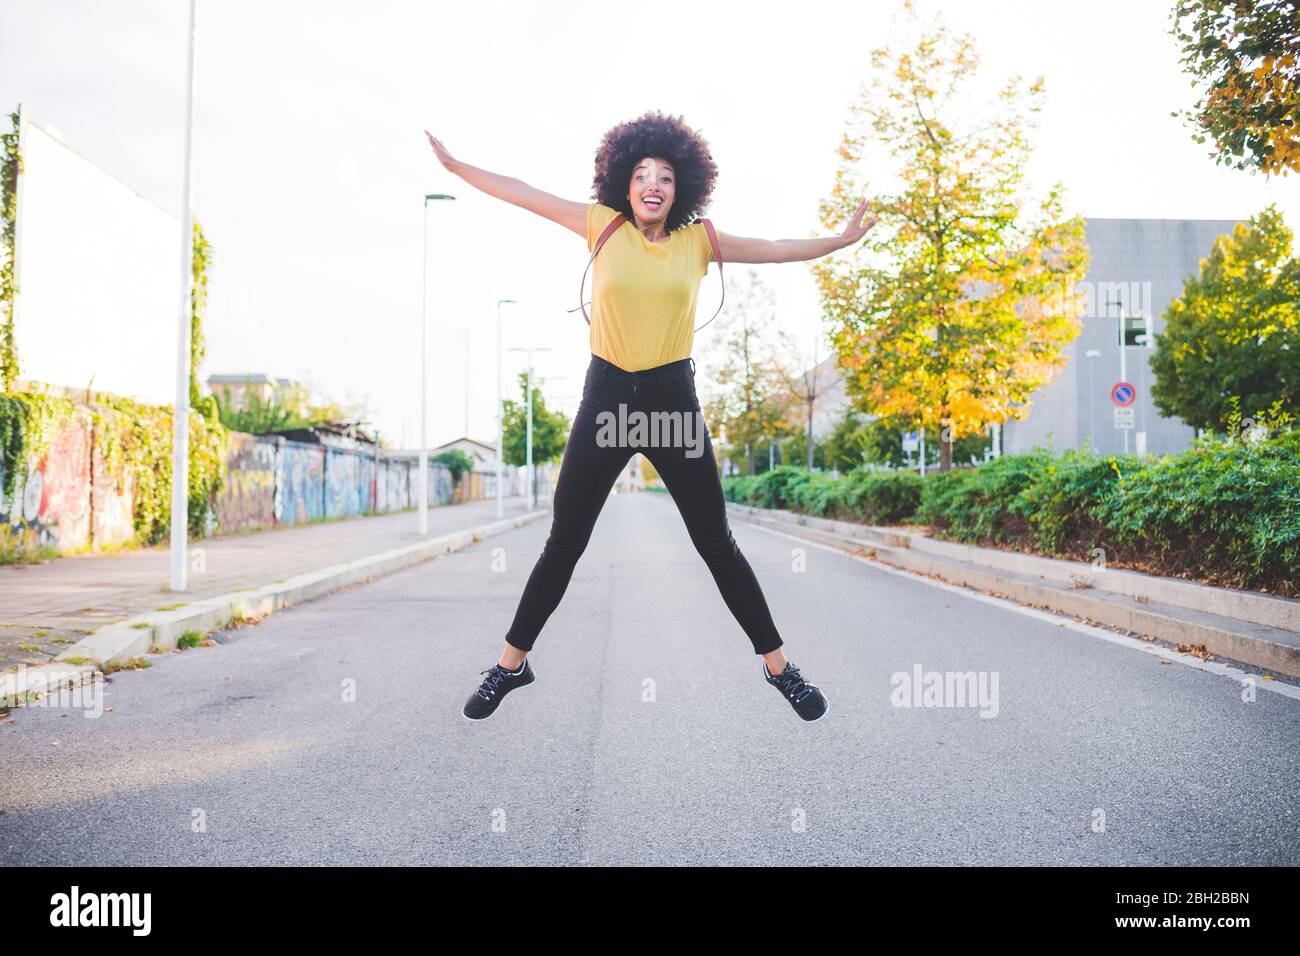 Glückliche junge Frau mit afro Frisur Springen auf einer Straße in der Stadt Stockfoto